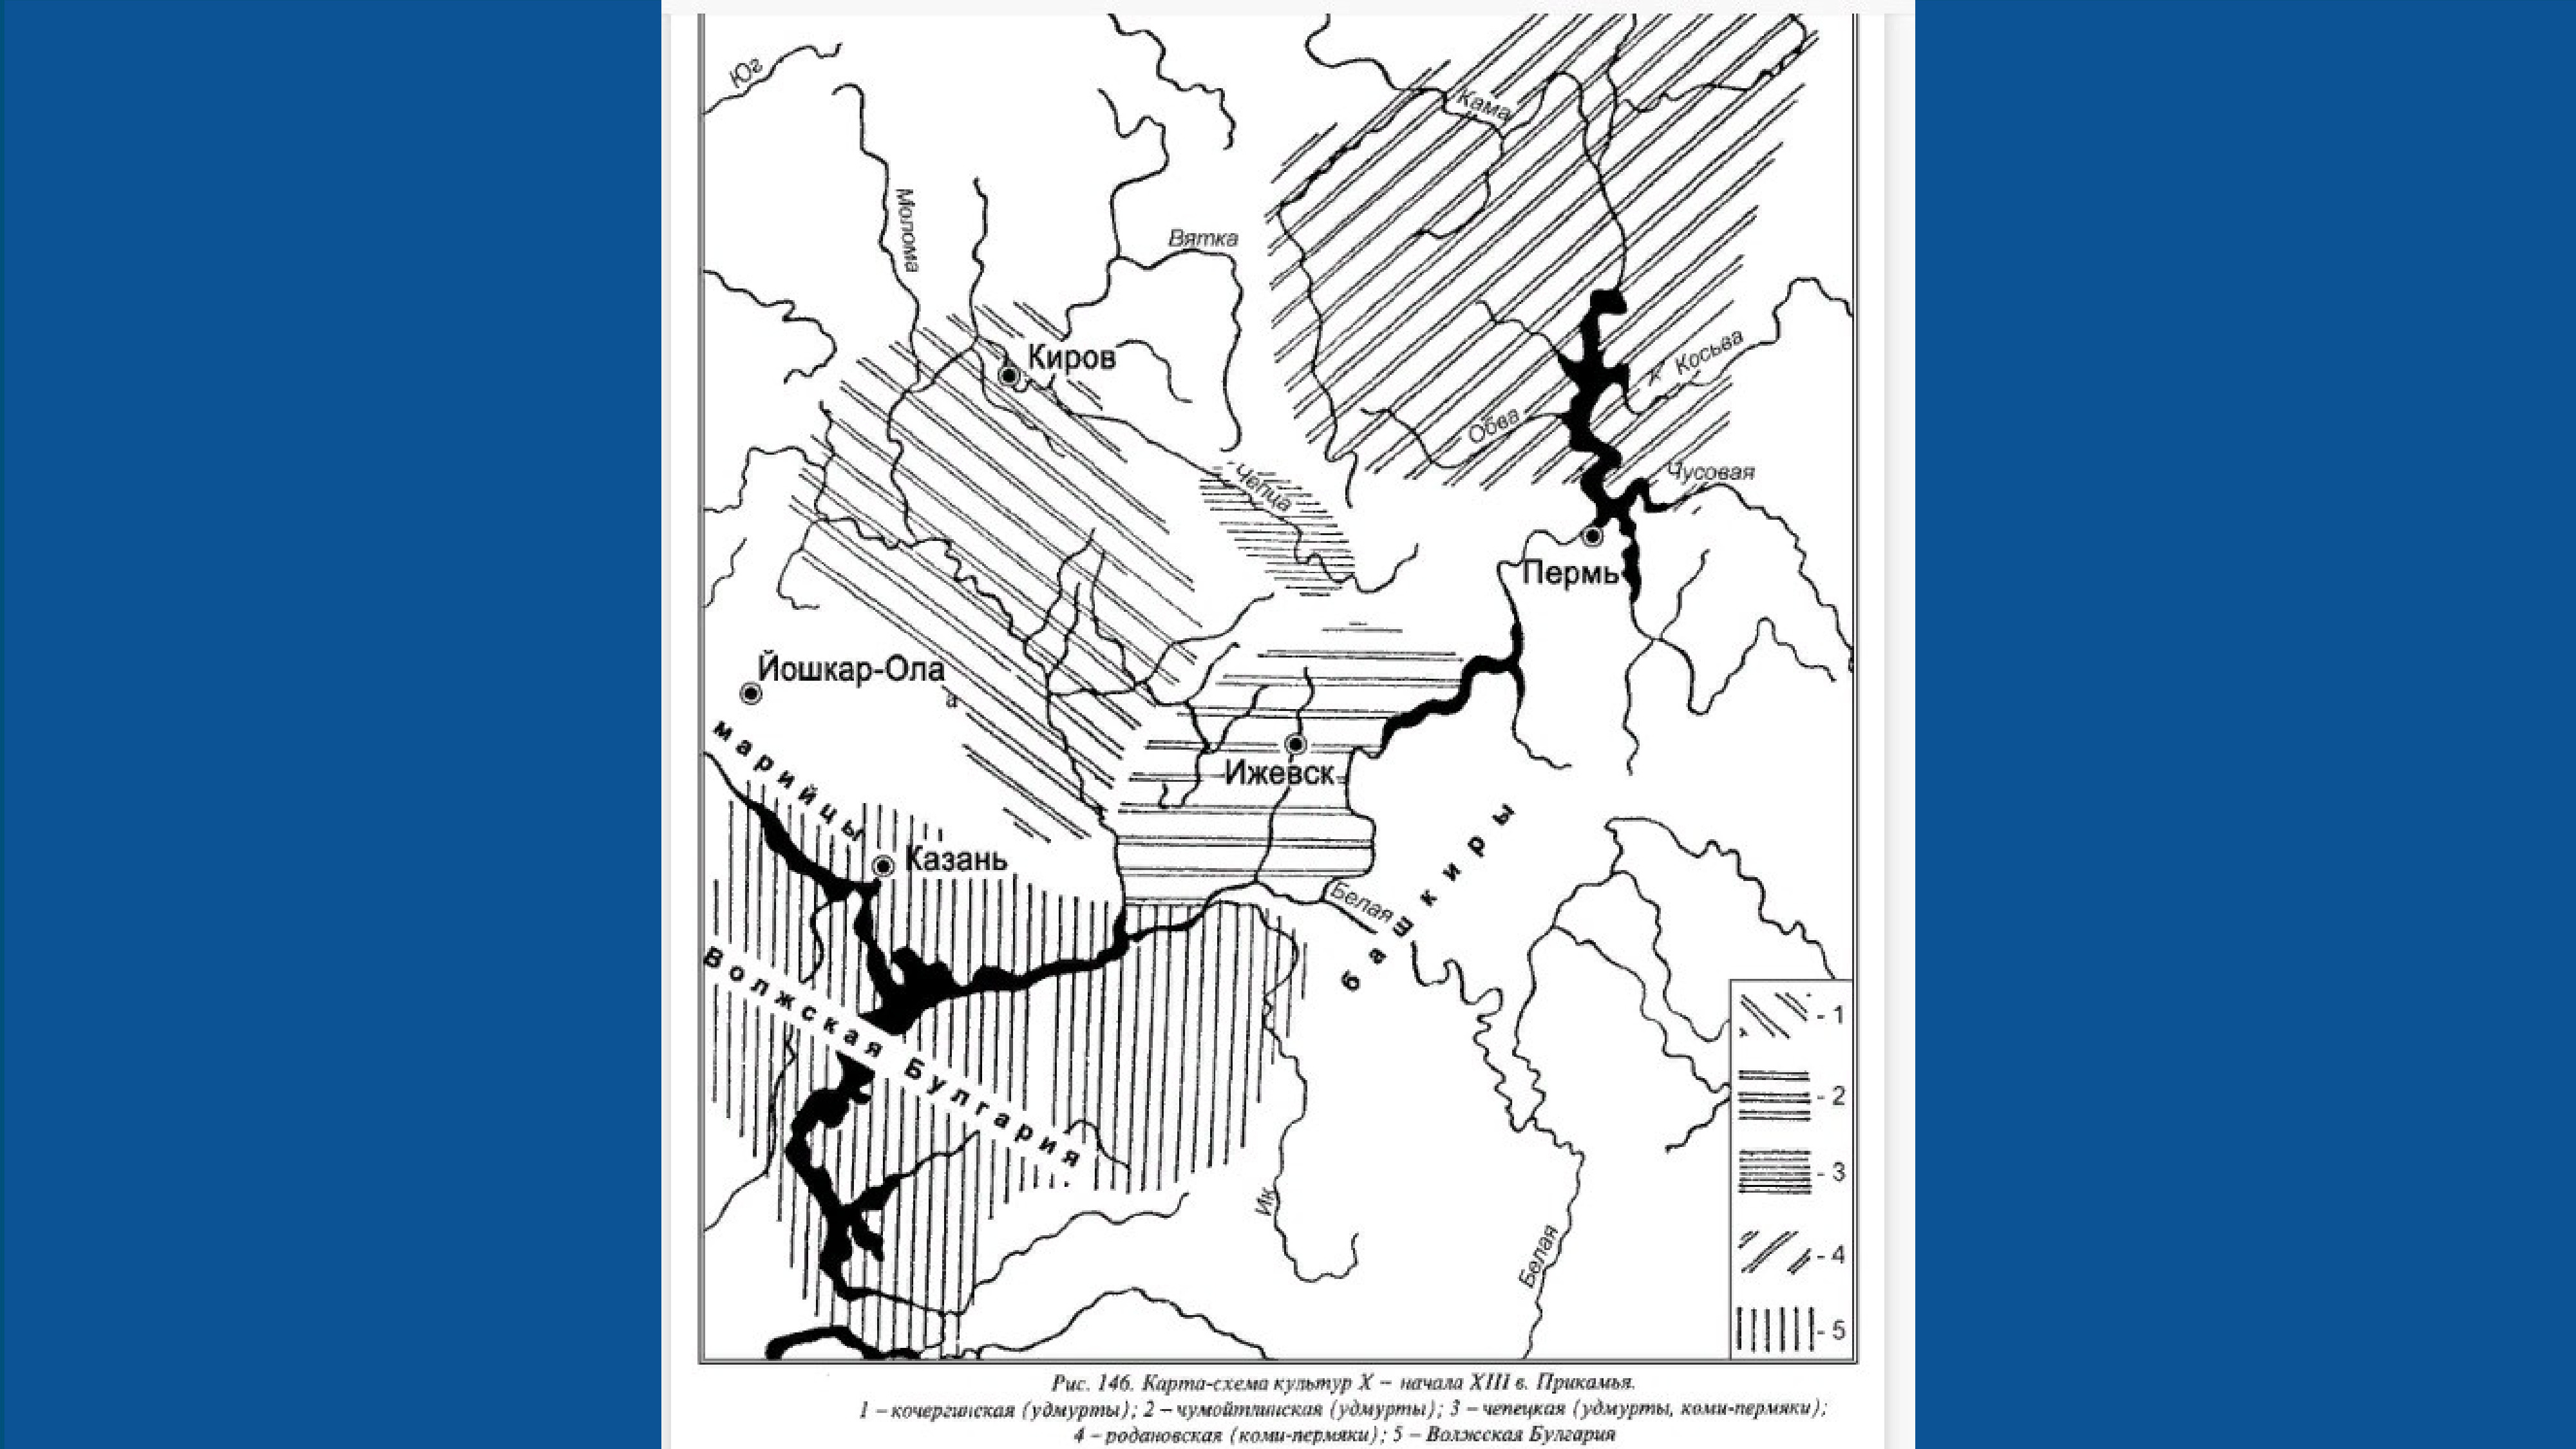 Где город вятка. Бассейн реки Вятка. Вятка на карте. Бассейн Вятки. Вятка на карте 12 века.